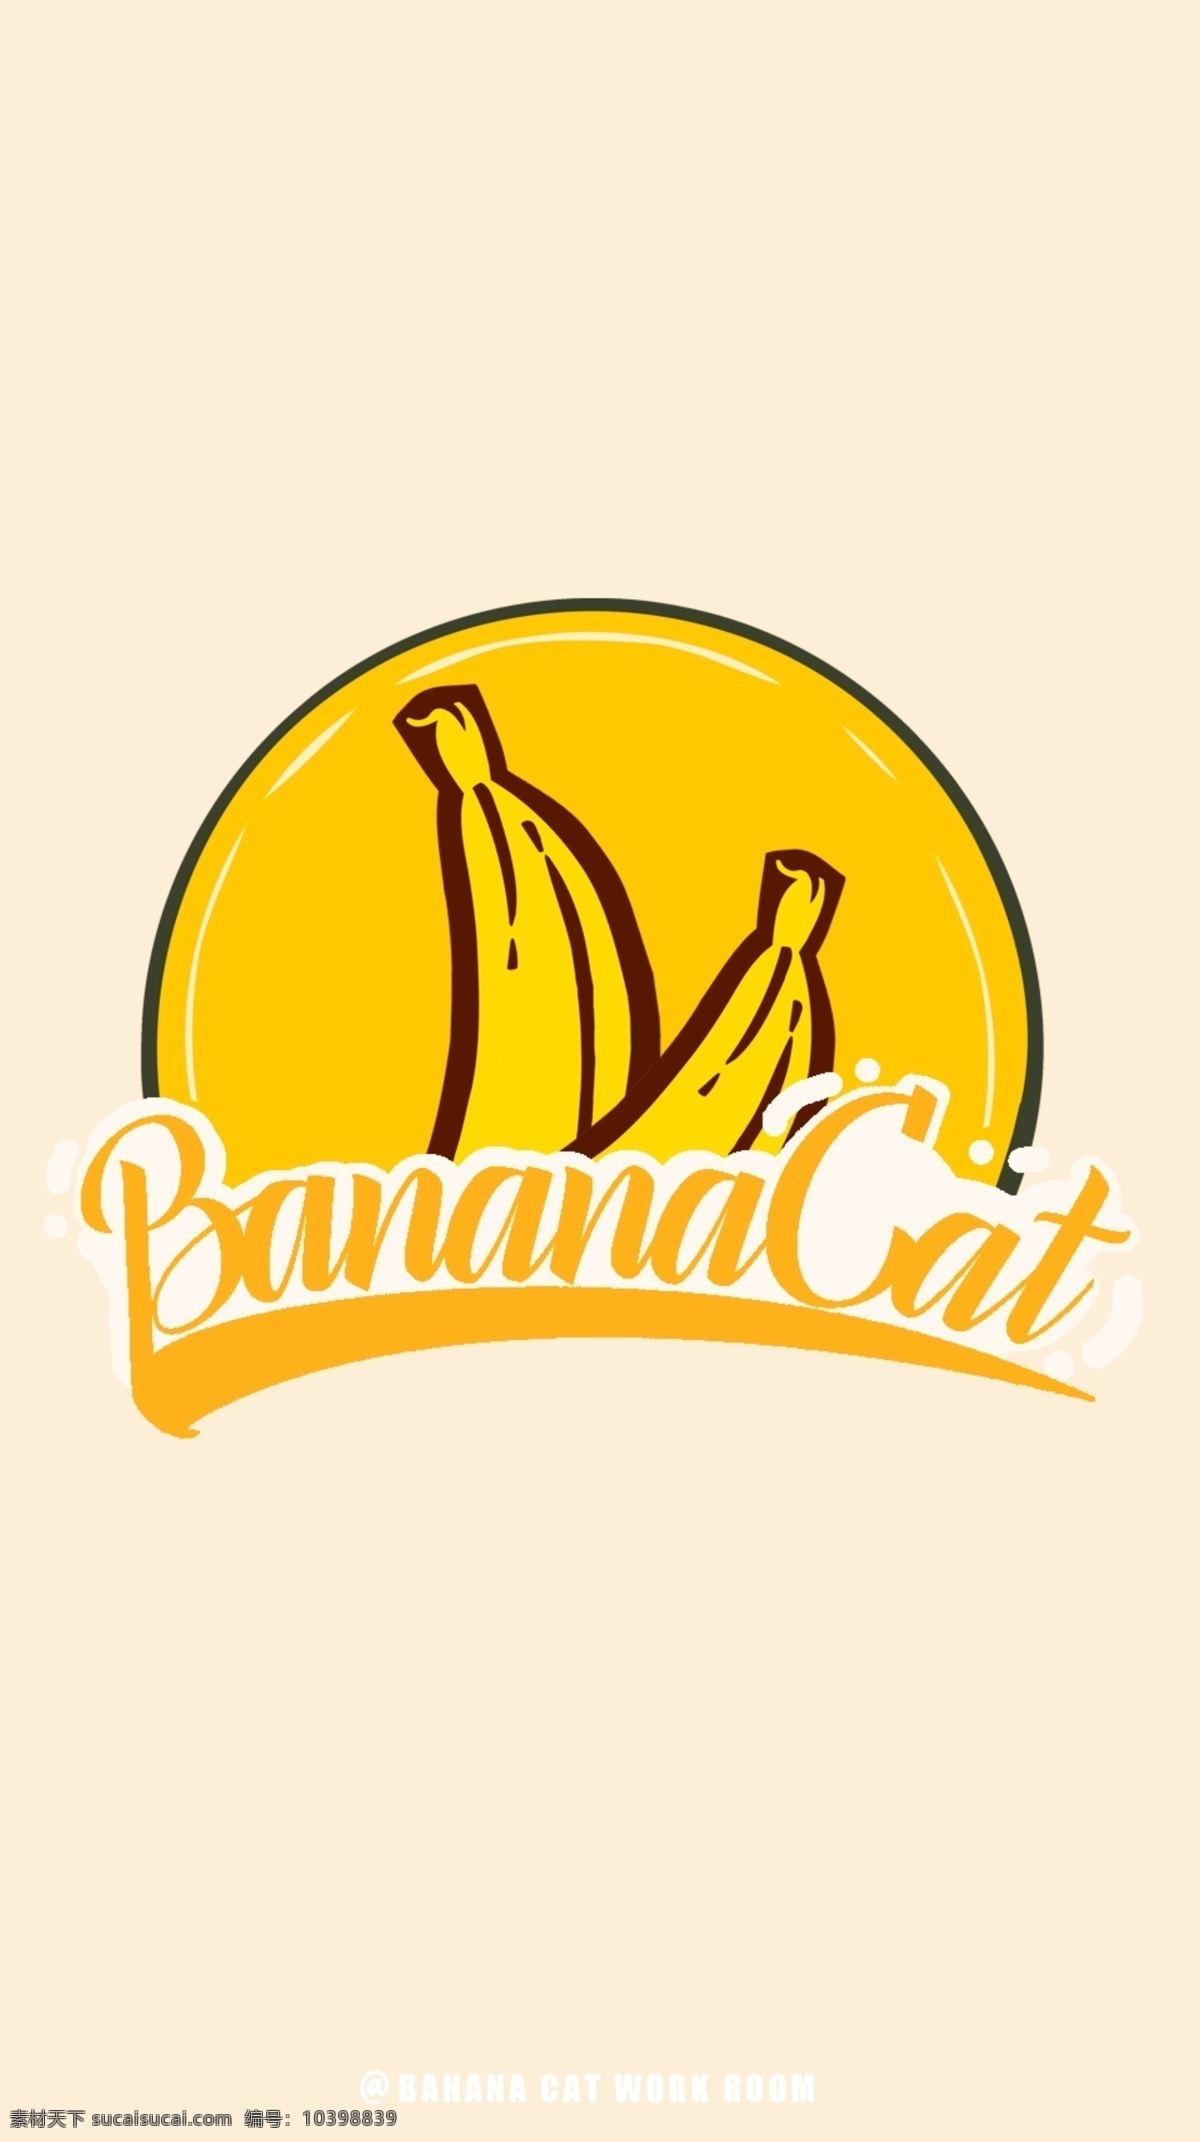 香蕉品牌壁纸 香蕉 黄色 海报 品牌 logo 壁纸 个性 简约 潮流